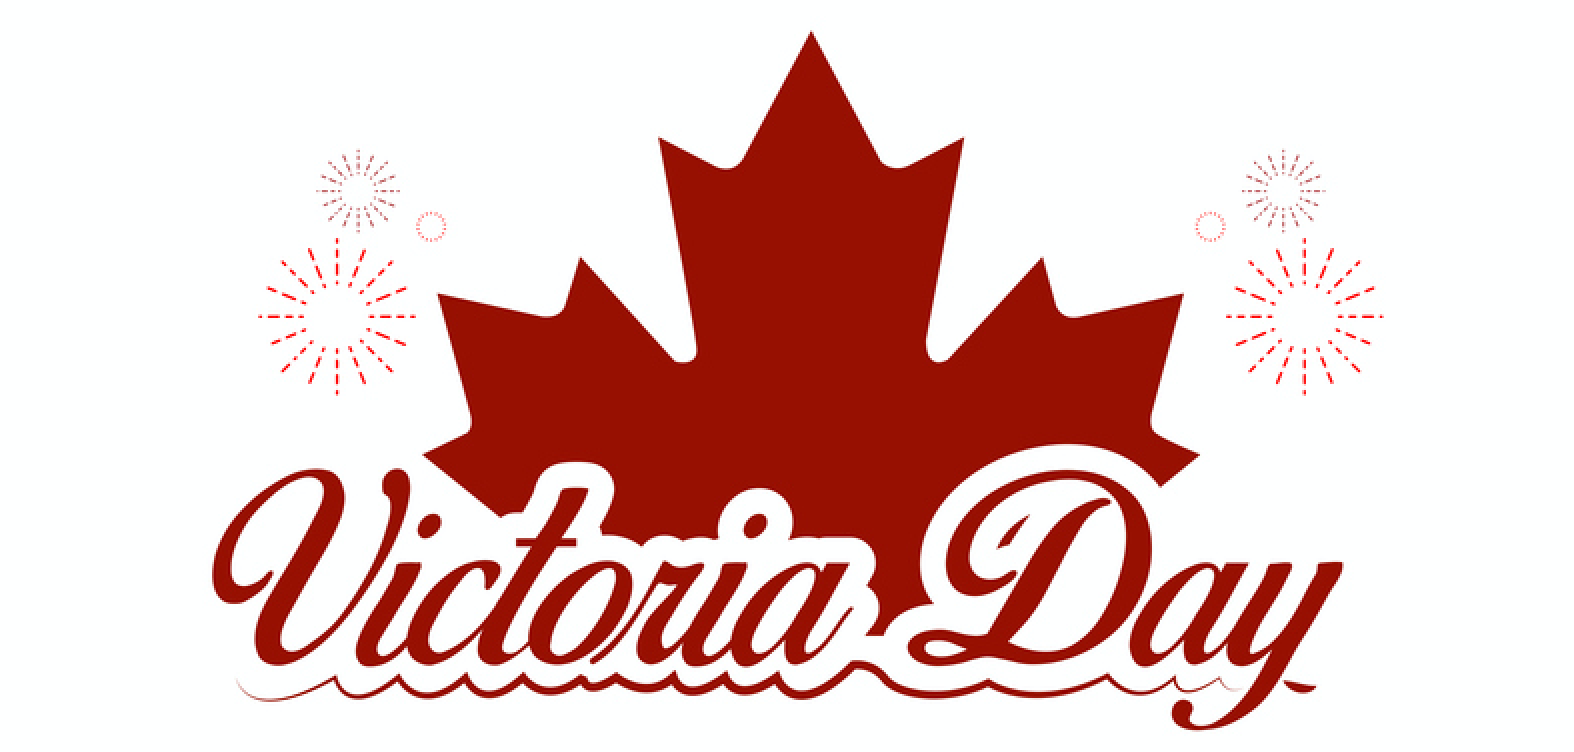 Victoria Day Canada